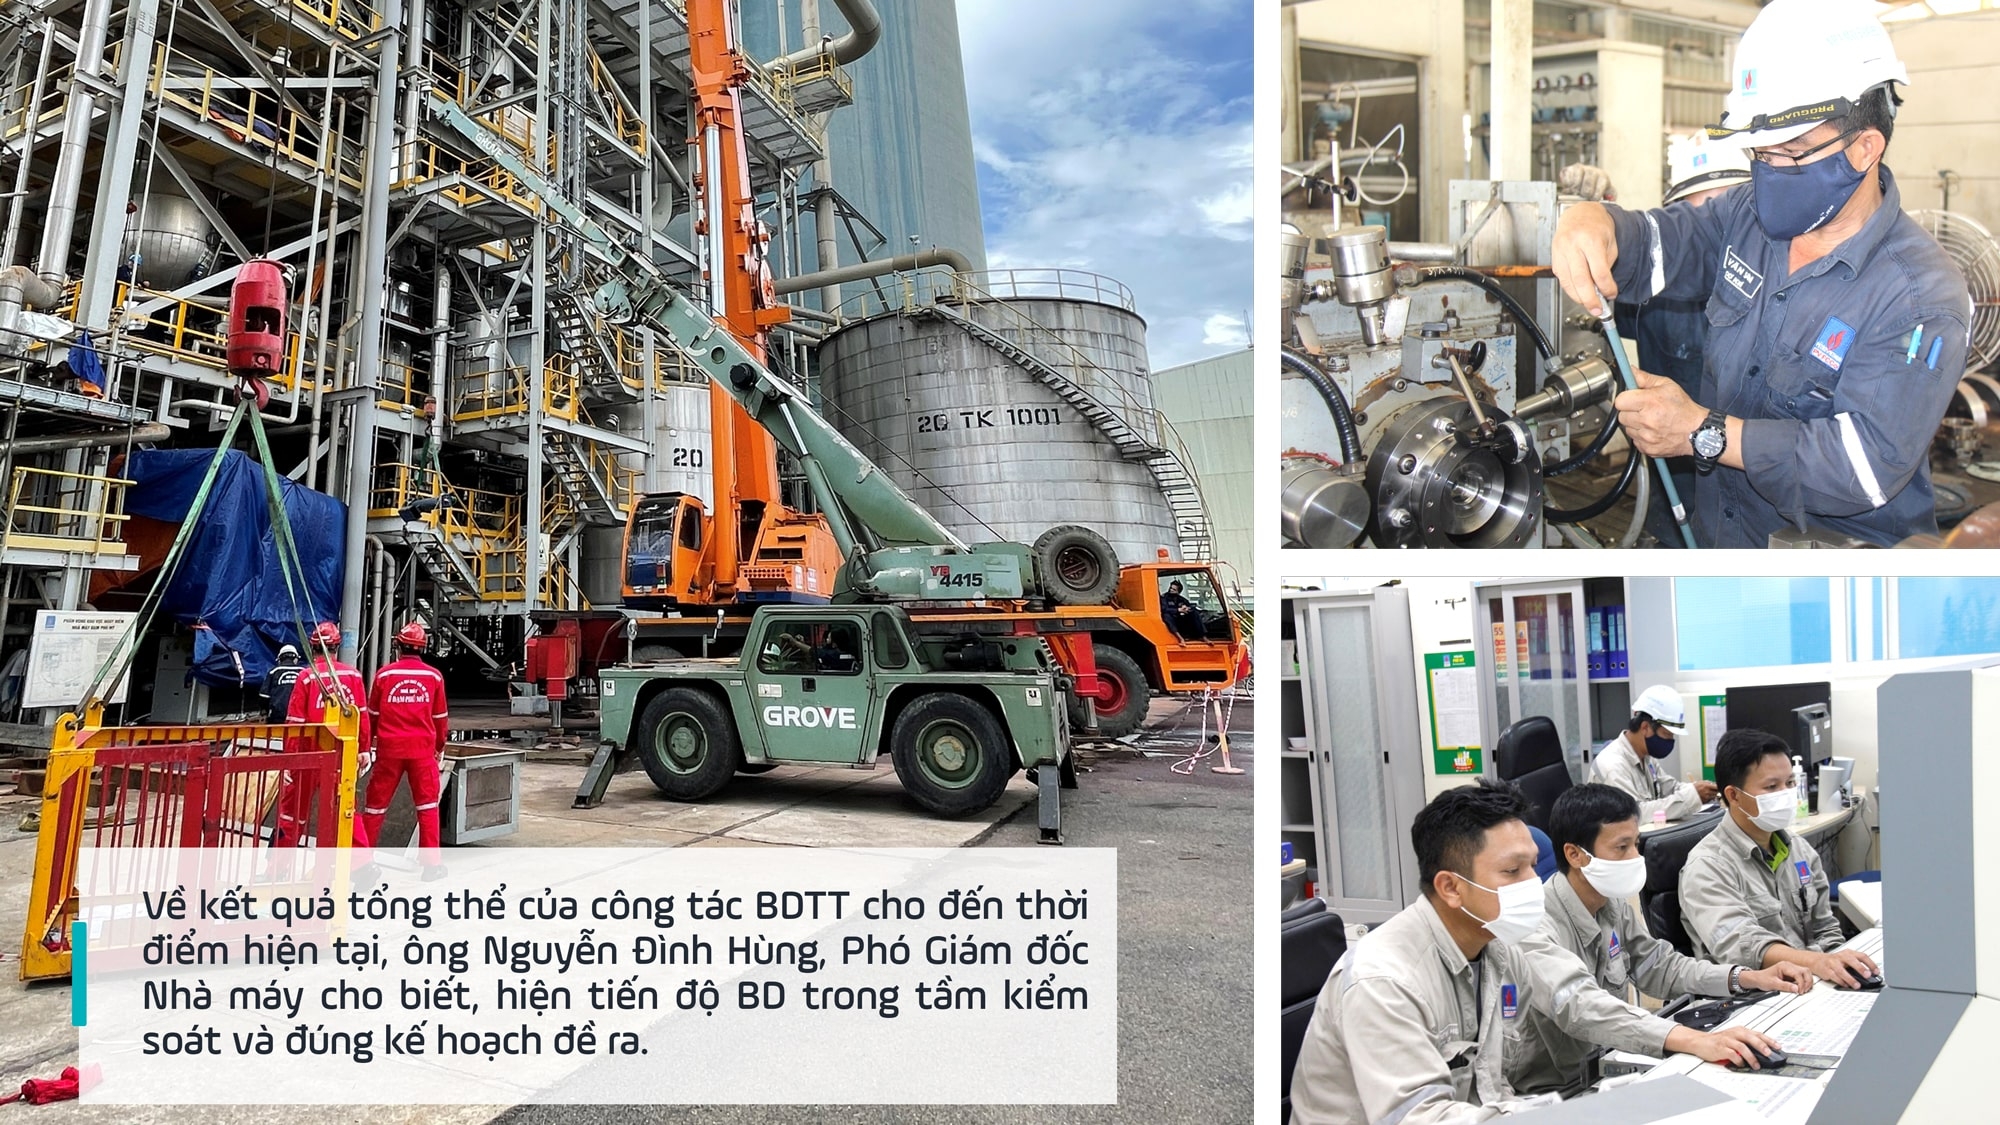 [E-Magazine] BDTT Nhà máy Đạm Phú Mỹ: An toàn, hiệu quả như kỳ vọng!